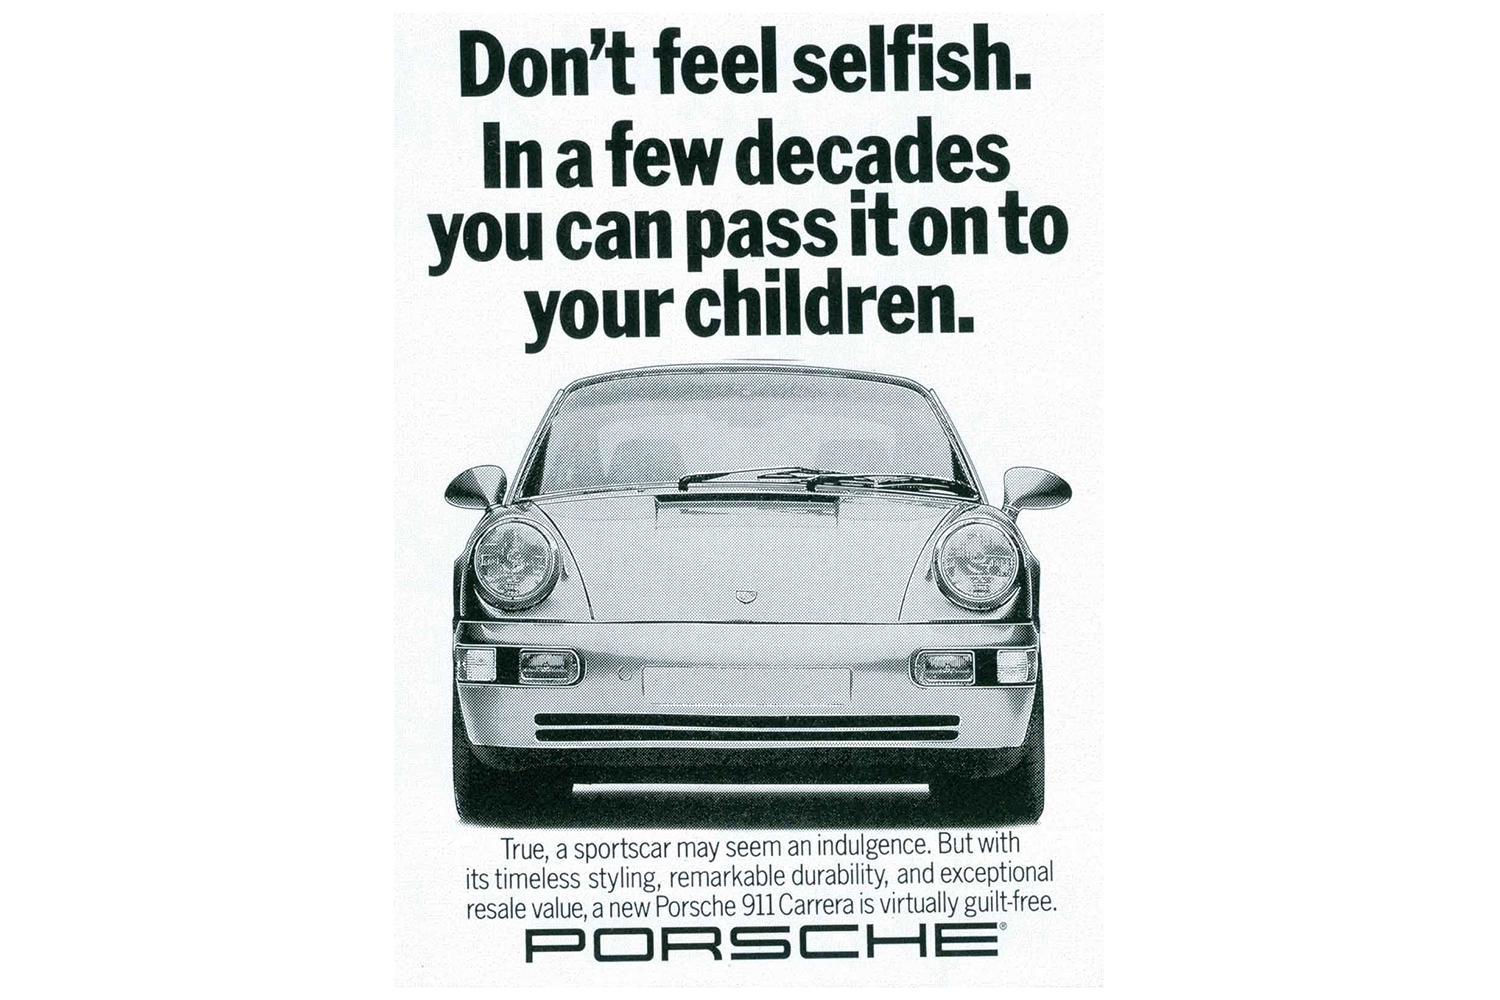 A vintage car ad for the Porsche 911 Carrera